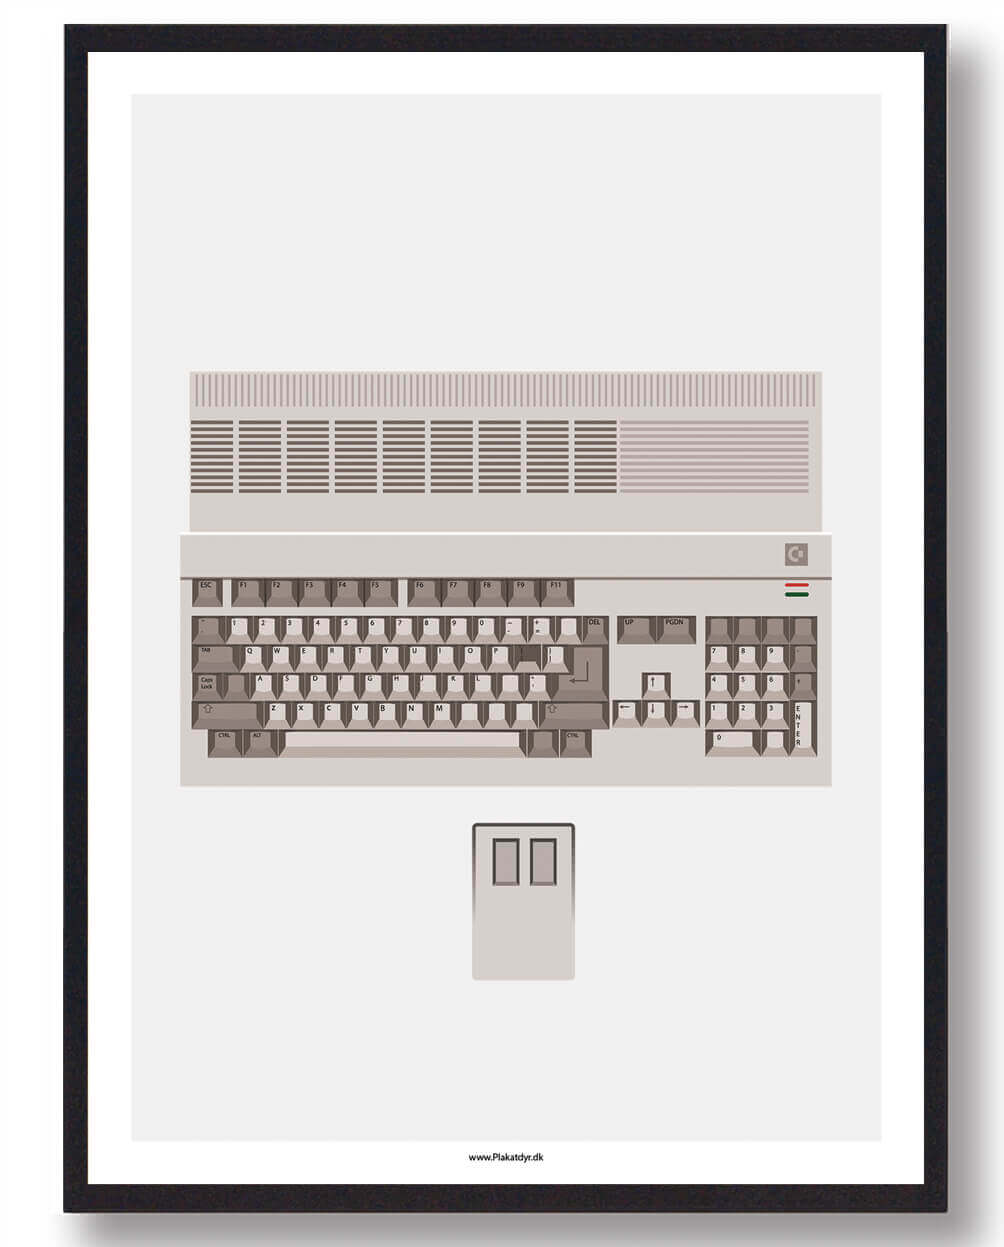 Amiga 500 - gamerplakat